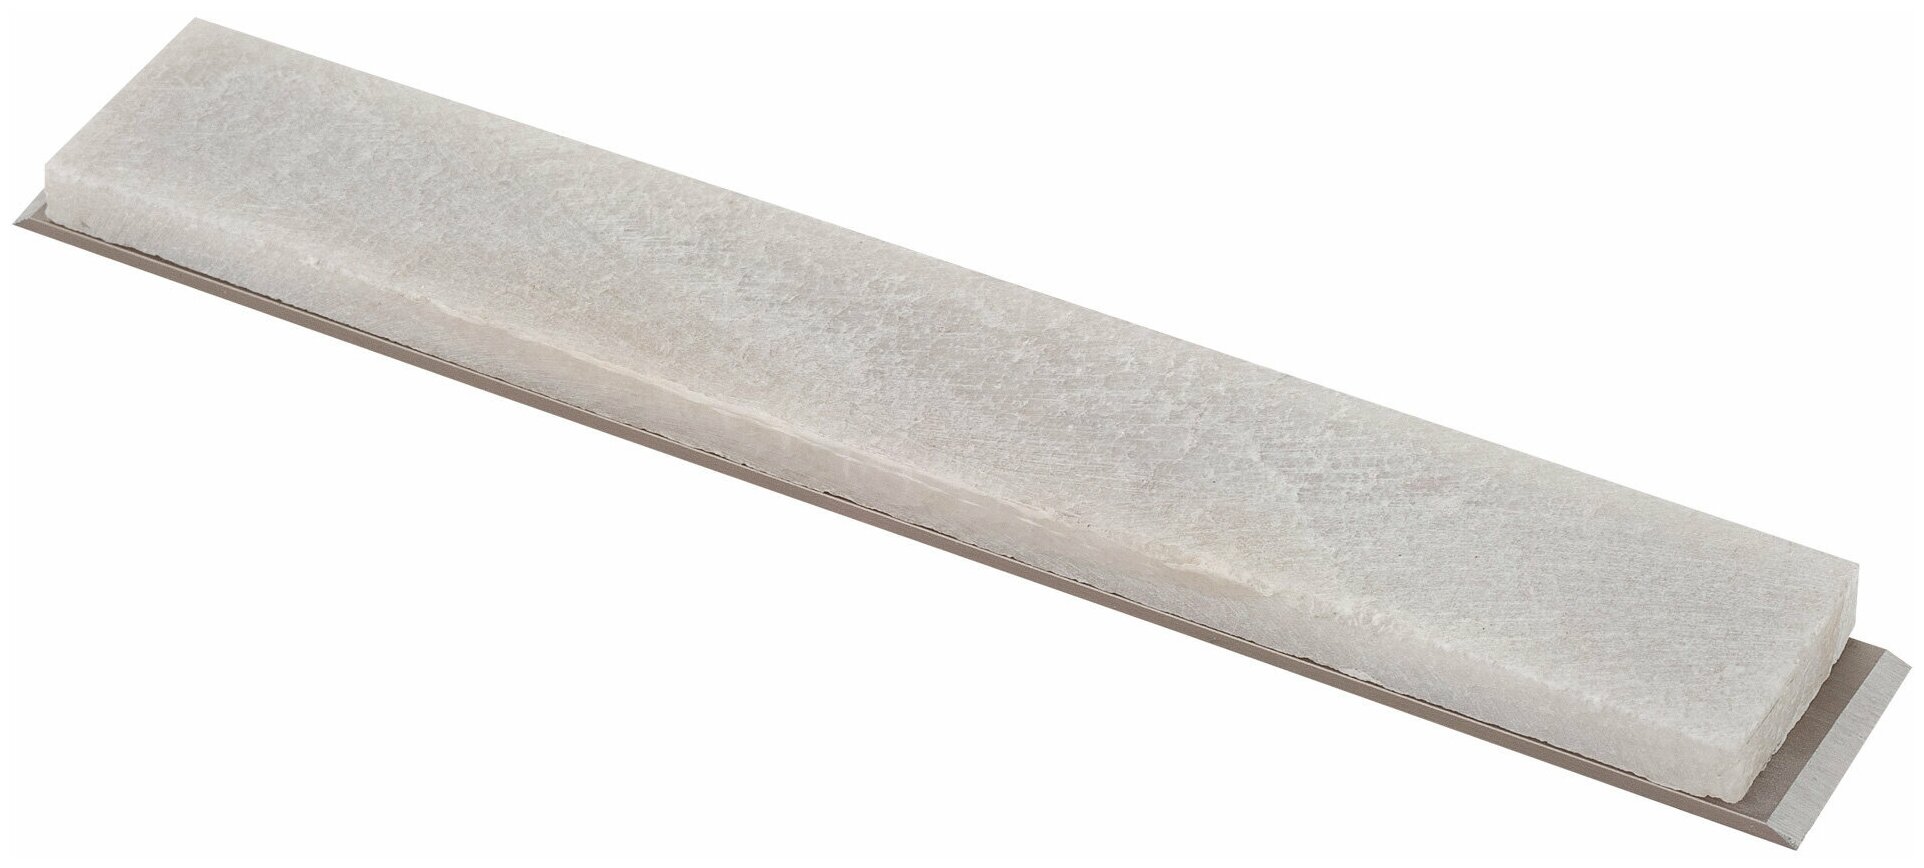 Брусок из натурального природного камня для заточки ножей на алюминиевой платформе Молочный Кварц 15 х 1.6 х 0.5 см